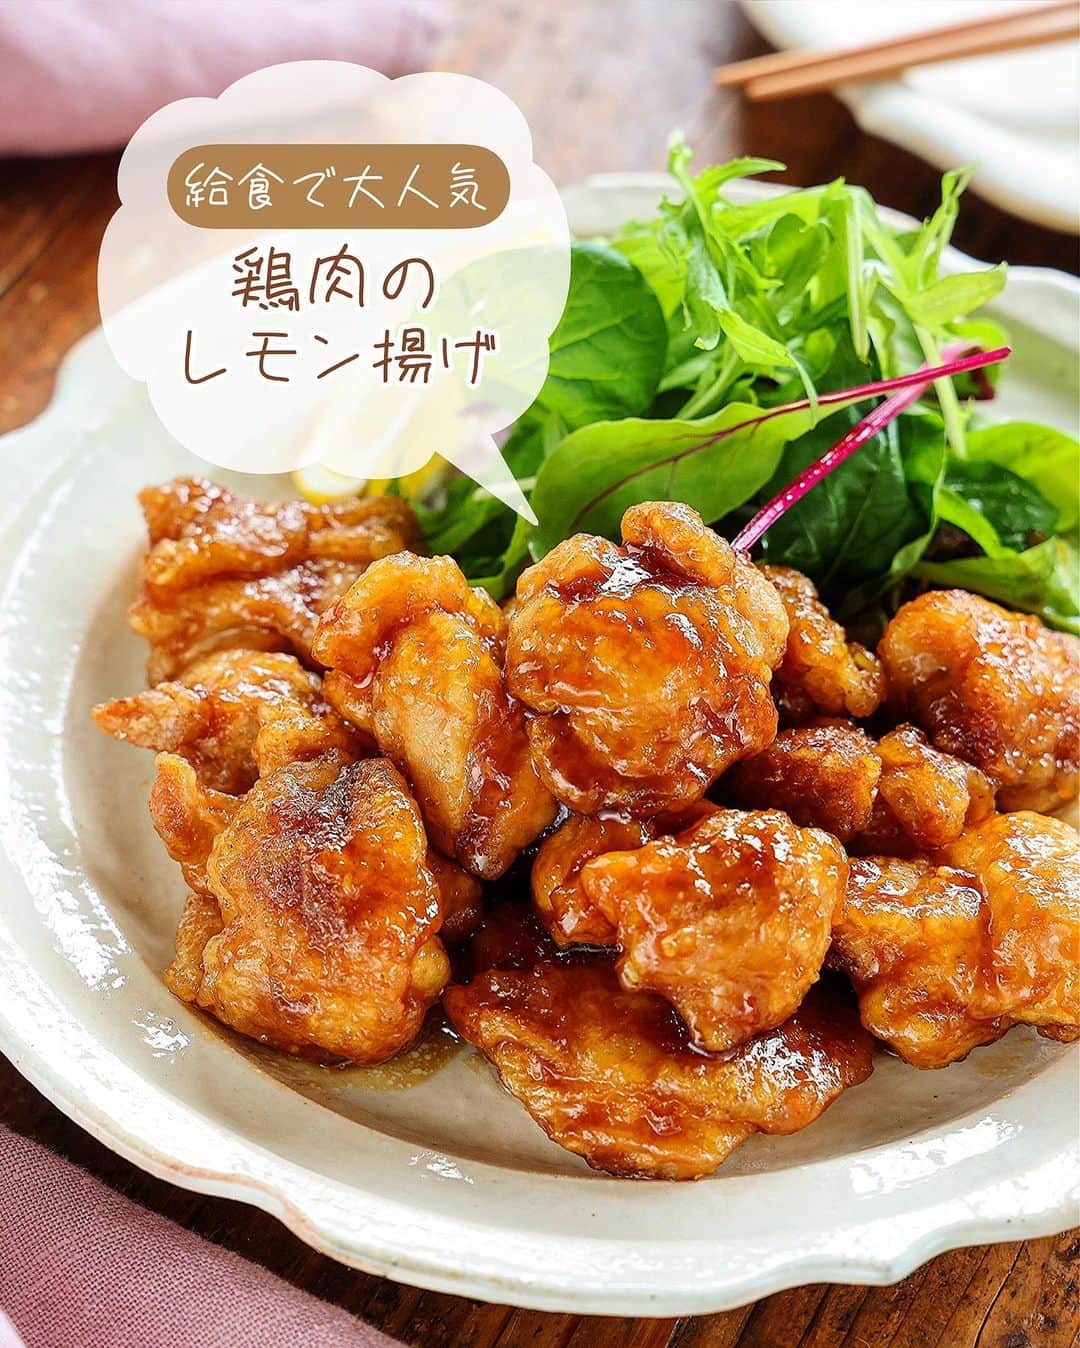 Mizuki【料理ブロガー・簡単レシピ】のインスタグラム：「・給食の大人気メニュー💕 ⁡ ［#レシピ ］ ーーーーーーーーーーーーーーーー 給食で大人気！鶏肉のレモン揚げ ーーーーーーーーーーーーーーーー ⁡ ⁡ ⁡ おはようございます☺️ ⁡ 今日ご紹介させていただくのは 給食の大人気メニュー \ 鶏肉のレモン揚げ / ⁡ これ、多少の違いはあれど 全国的に有名ですね💕 給食調理員さんに聞いて作ってみたら おいしくてびっくりしました🤭 ⁡ このレシピは漬け込み不要！ タレはレンジで作れます✨ 昔のレシピより 更に手軽にアップデートしましたので よかったらお試しくださいね🥰✨ ⁡ ⁡ ⁡ 💬💬💬 謎の暮らしアカウント作りました🏠 変なライブはこっちでやってます🤫 →(@mizuki_kurashi ) ⁡ ⁡ 【簡単・時短・節約レシピ更新中🔻】 @mizuki_31cafe ⁡ ⁡ ⁡ ＿＿＿＿＿＿＿＿＿＿＿＿＿＿＿＿＿＿＿ 【2人分】 鶏もも肉(むね肉でも)...大1枚(300g) 塩こしょう...少々 ●醤油・砂糖...各大1.5 ●水・レモン汁...各小2 片栗粉・サラダ油...各適量 ⁡ 1.鶏肉は3cm大に切り、塩こしょうを振って片栗粉をまぶす。 2.小さめのフライパンに5mmの油を中火で熱し、1を返しながら揚げ焼きにし(6分くらい)、火が通ったら油を切る。 3.(揚げ焼きしている間に)耐熱ボウルに●を入れ、600Wのレンジで1分加熱する。 4.3のボウルに2を入れてからめ、器に盛る。 ￣￣￣￣￣￣￣￣￣￣￣￣￣￣￣￣￣￣￣ ⁡ ⁡ 《ポイント》 ♦︎レモン汁はポッカレモンなど市販のものでOK♩ ♦︎鶏むね肉を使用する場合は1cm厚さの削ぎ切りにし、酒小2を揉み込んでから塩こしょう→片栗粉をまぶしてください♩ ♦︎片栗粉をまぶしたら、手の平でギュッと握ると衣が剥がれにくくなります♩ ♦︎酸味は控えめでお子さんも食べやすい味です♩ ⁡ ⁡ ⁡ ⁡ ⁡ ⁡ 𖤣𖥧𖥣𖡡𖥧𖤣✨ 愛用している調理器具や器などは #楽天ROOMに載せてます ‎𐩢𐩺 (ハイライトから飛べます🛍) ⁡ ⁡ ⁡ ⁡ ⁡ ⁡ 🔶全国の書店・ネット書店で発売中🔶 ⁡ ✼••┈┈┈┈┈••✼••┈┈┈┈┈••✼ 今日のごはんこれに決まり！ ‎𓊆#Mizukiのレシピノート 500品𓊇 ✼••┈┈┈┈┈••✼••┈┈┈┈┈••✼ ⁡ ˗ˏˋ おかげさまで25万部突破 ˎˊ˗ 料理レシピ本大賞準大賞を受賞しました🙇‍♀️ ⁡ 6000点の中からレシピを厳選し まさかの【500レシピ掲載】❣️ 肉や魚のメインおかずはもちろん 副菜、丼、麺、スープ、お菓子 ハレの日のレシピ、鍋のレシピまで 全てこの一冊で完結𓌉◯𓇋✨ ⁡ ⁡ ⁡ ⁡ ✼••┈┈┈••✼••┈┈┈••✼ Mizukiのカンタン手作り   𓊆 #3時のおやつ 𓊇 ✼••┈┈┈••✼••┈┈┈••✼ ⁡ 『3分クッキング』で連載中の 「Mizukiのカンタン手作り」 ‎4年分のおやつが1冊になりました！ ❝オーブンなしで❞ 身近な材料と道具でできる 簡単、手軽なおやつを80品🍪 ⁡ ⁡ ⁡ ⁡ ⁡ #鶏肉のレモン揚げm #鶏肉のレモン揚げ #給食 #給食レシピ #再現レシピ #鶏肉レシピ #唐揚げ #からあげ #節約料理 #簡単料理  #時短料理 #料理 #mizukiレシピ  #アルモンデ #時短レシピ #節約レシピ #簡単レシピ」